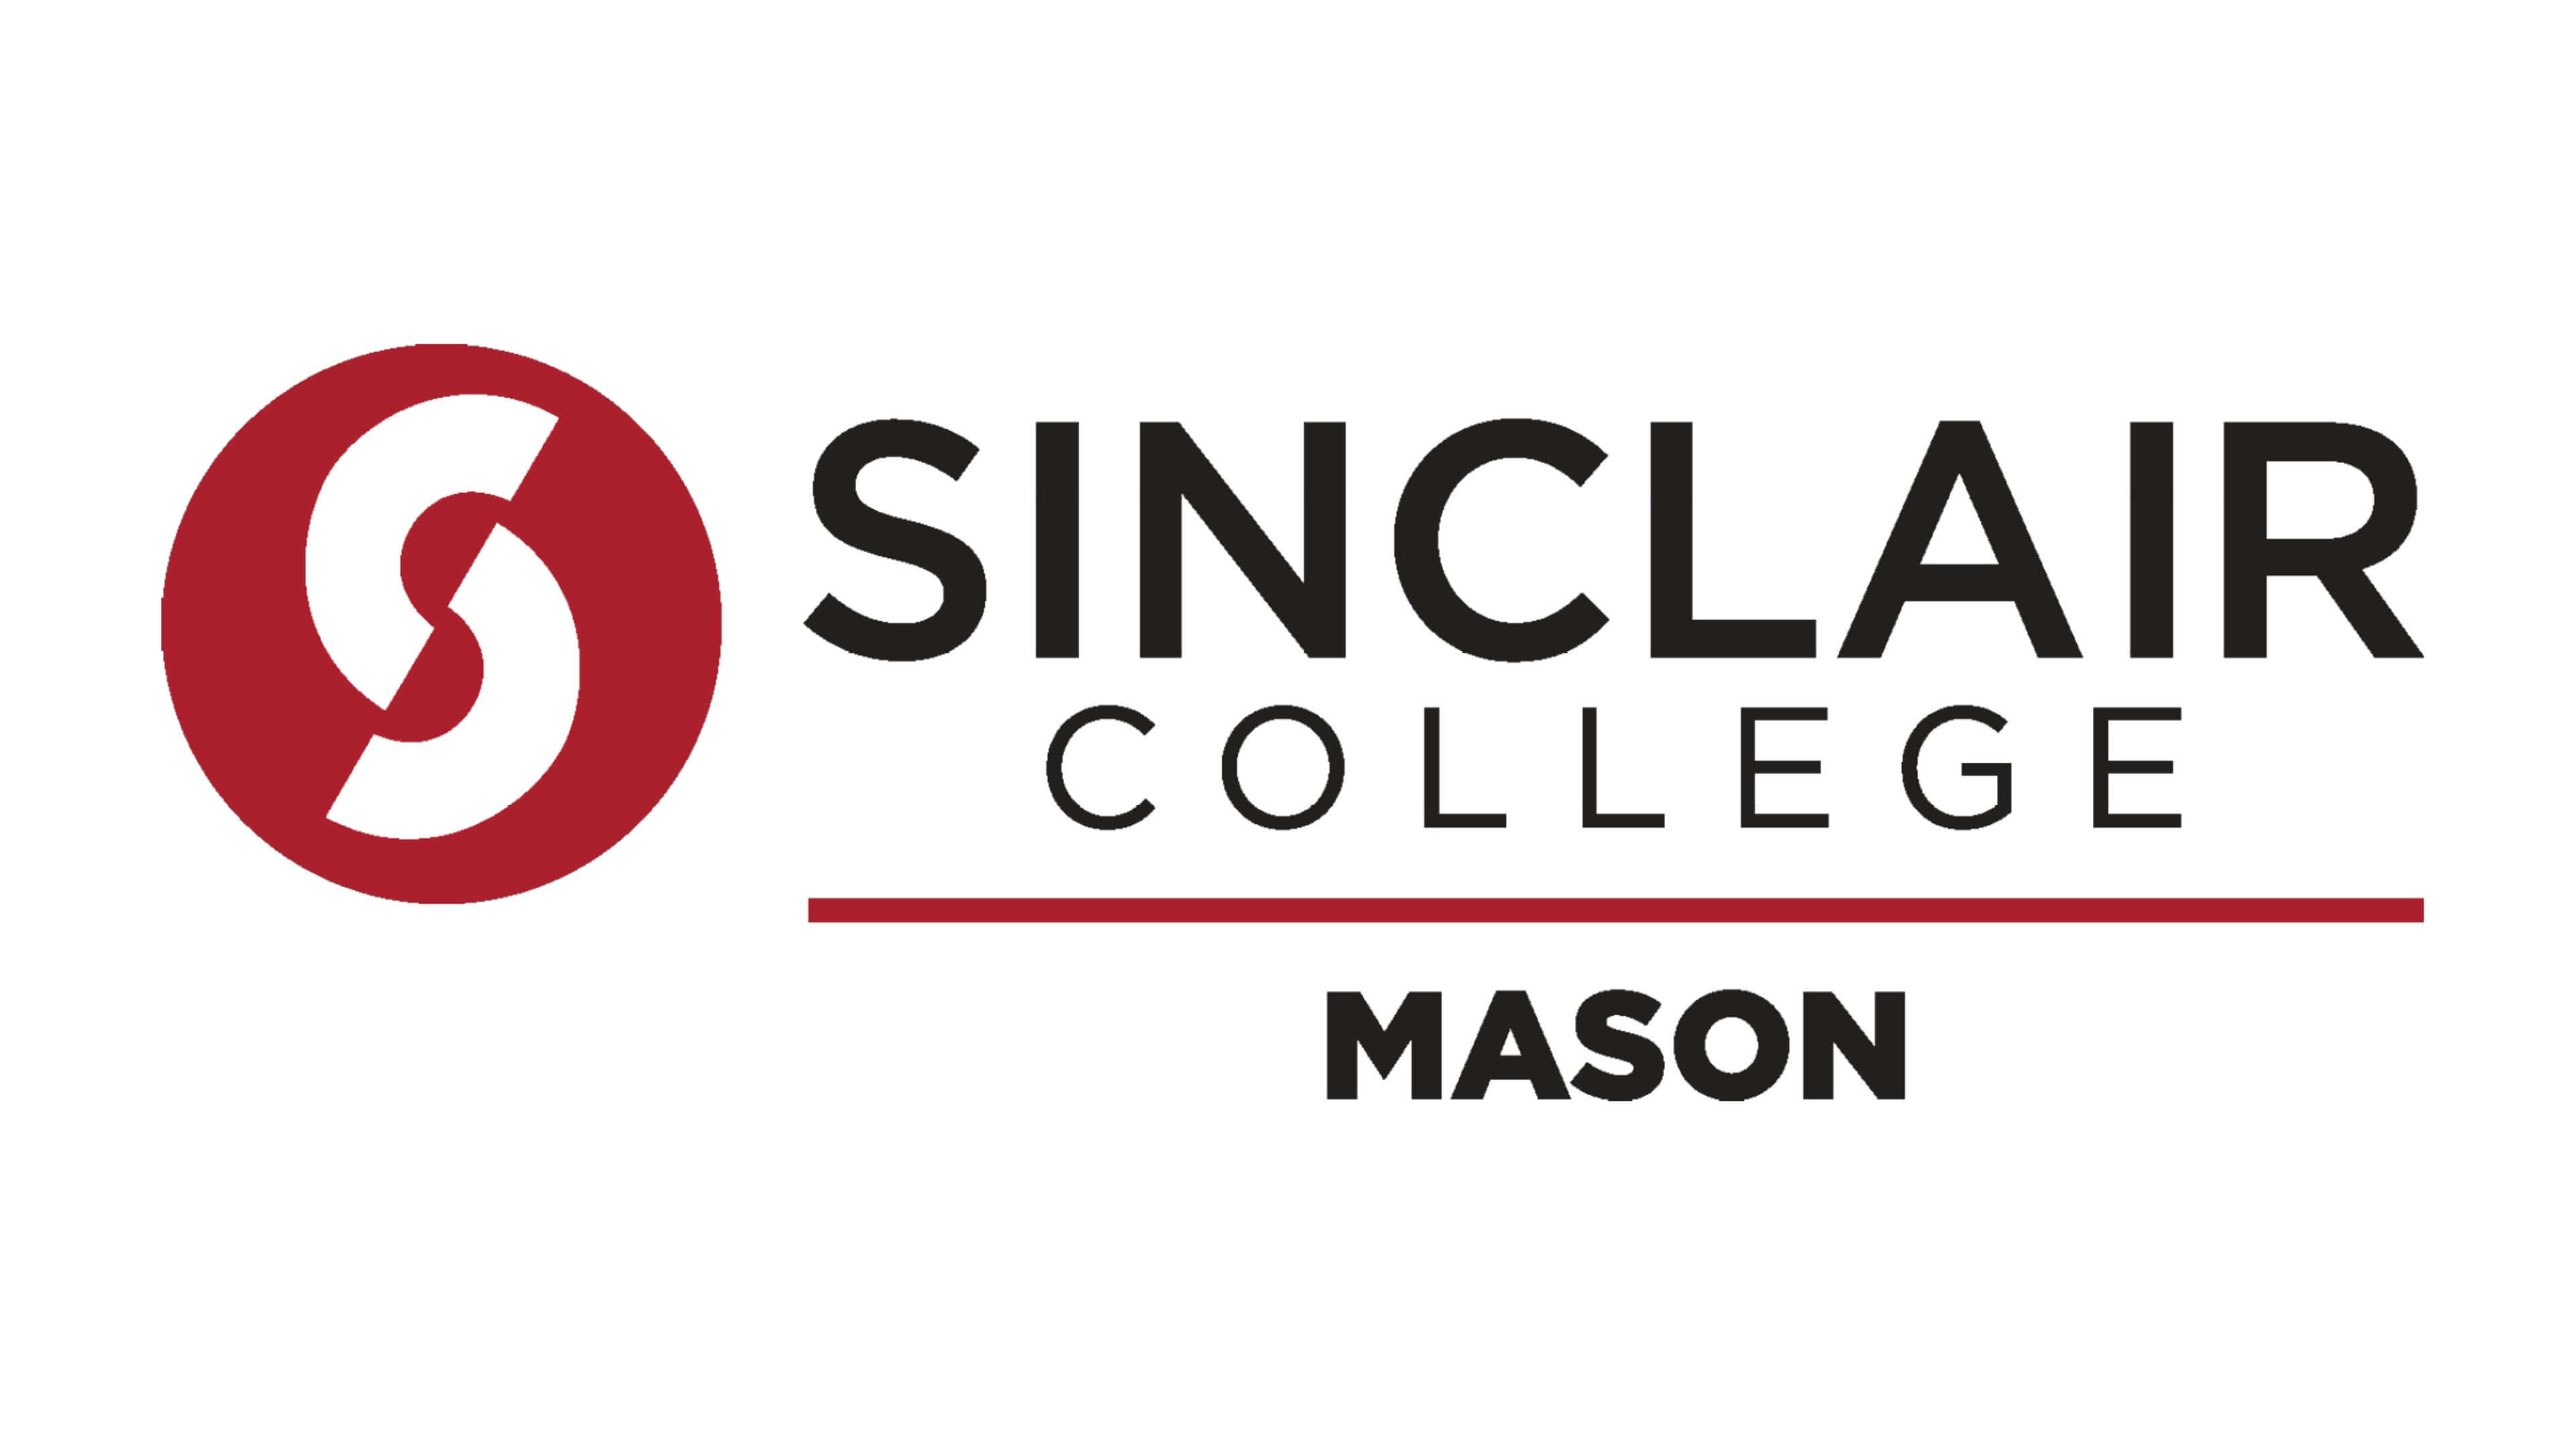 Sinclair College in Mason